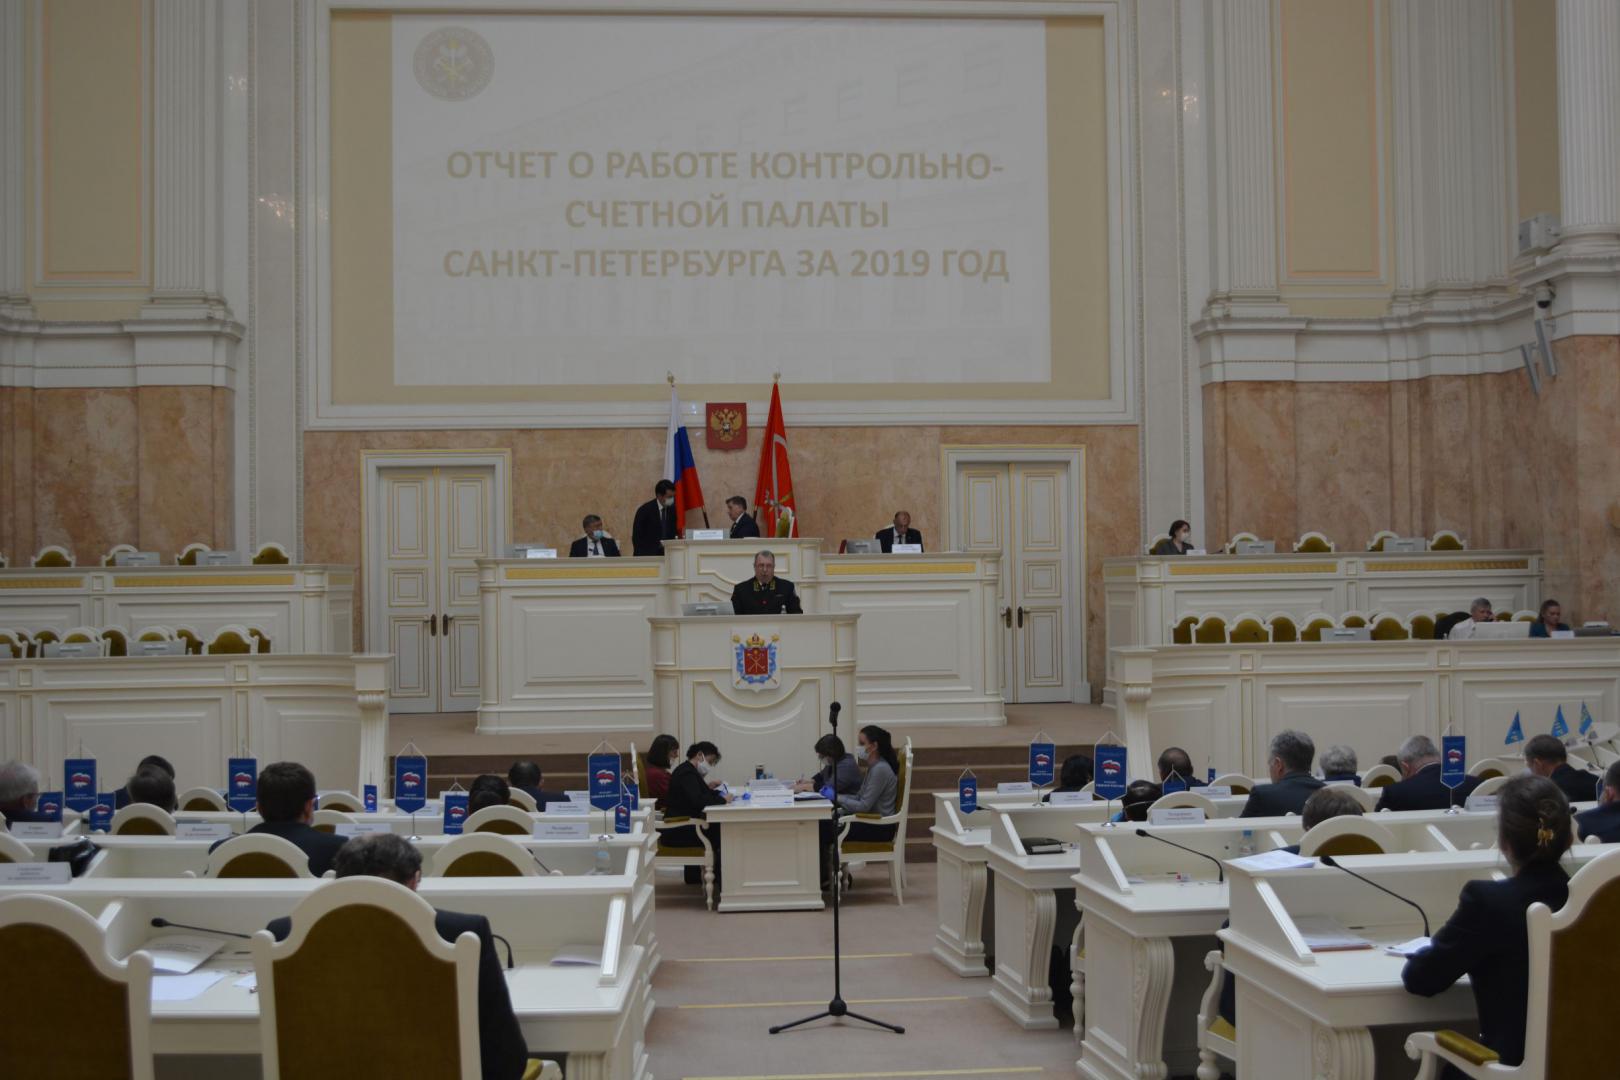 Отчет о работе Контрольно-счетной палаты Санкт-Петербурга за 2019 год рассмотрен в городском парламенте